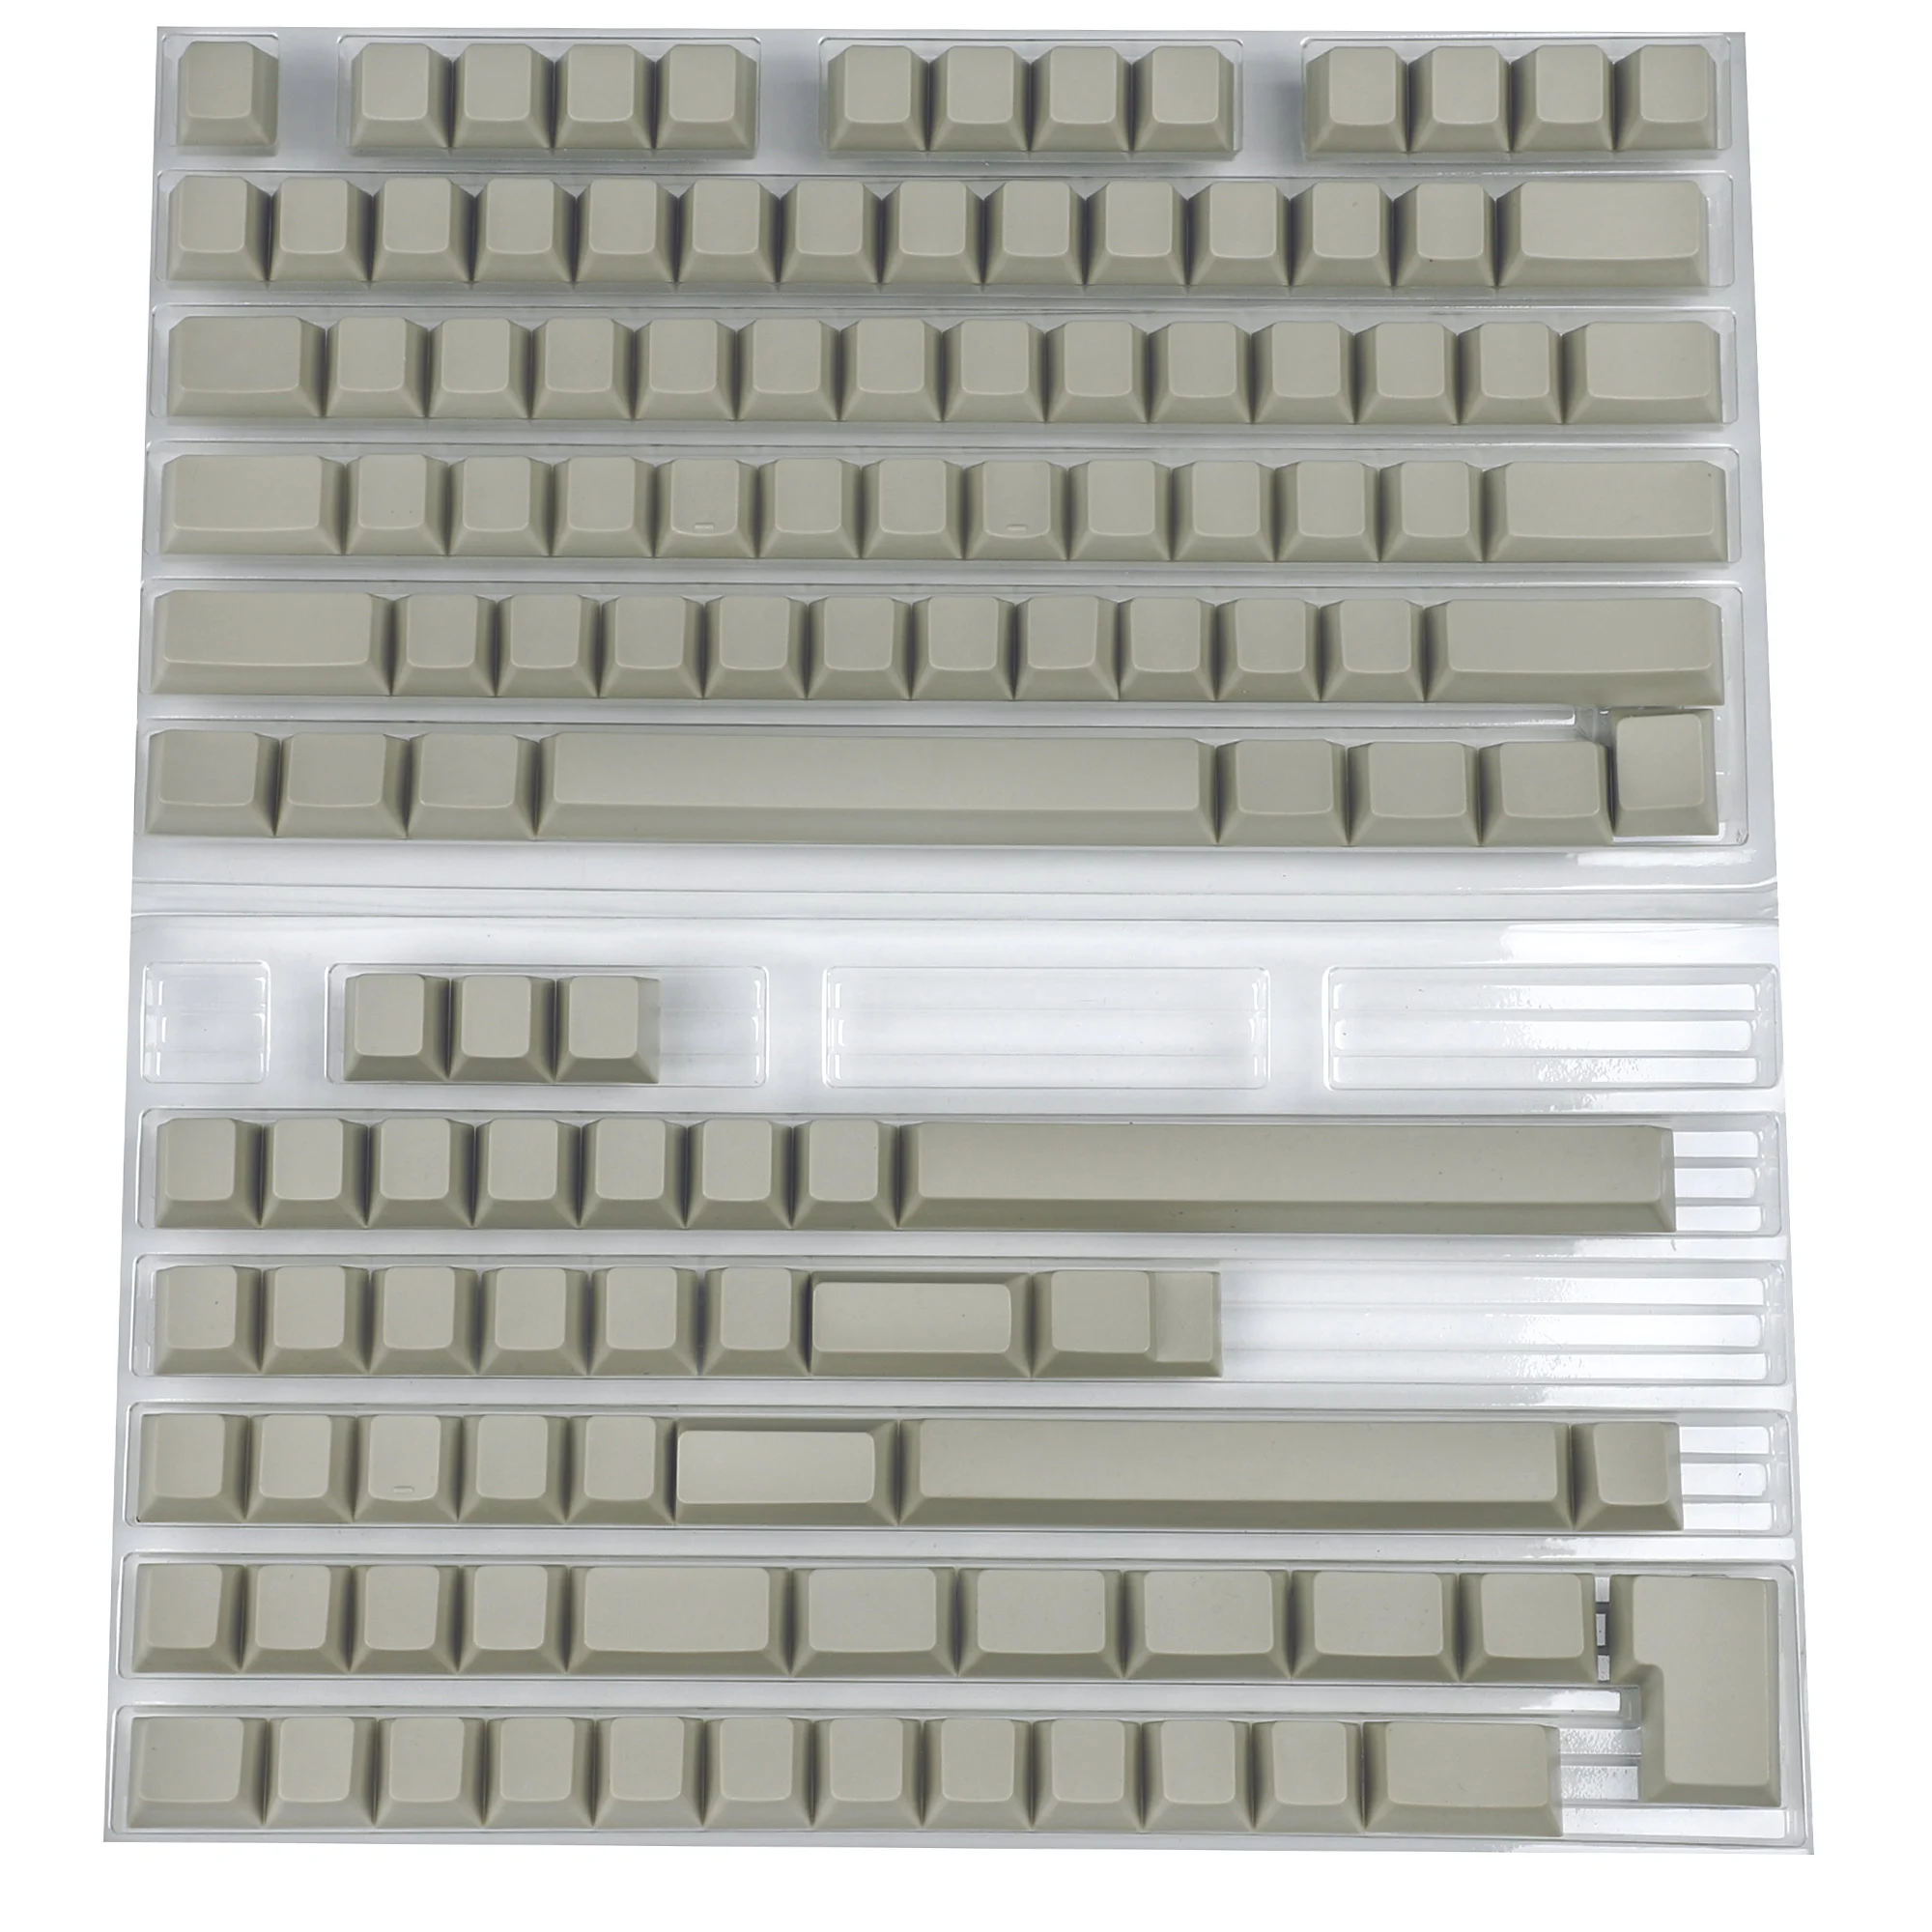 Blank 121 119 pustych kluczy wiśniowy profil gruby PBT klawiatura ANSI ISO układ do mechaniczna klawiatura do gier przełączniki MX wiśniowego